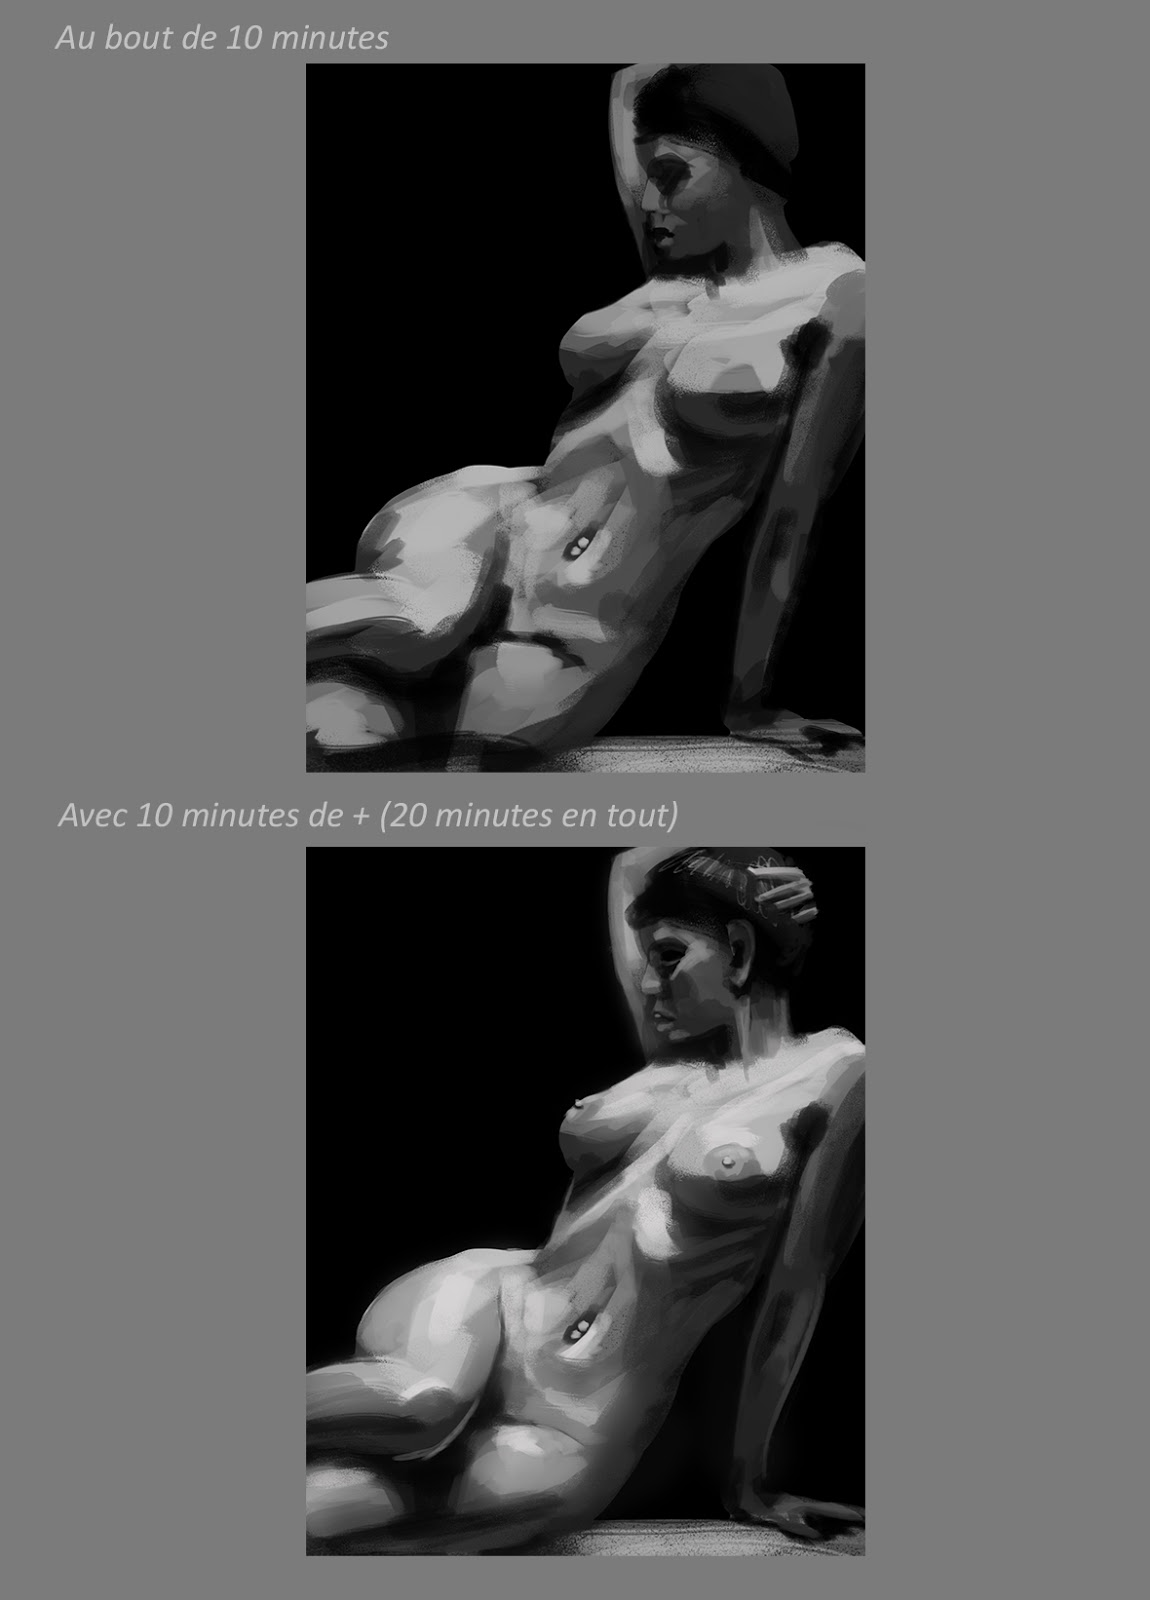 XaB au travail ! [nudity inside] - Page 7 J05-02-Gromy-Tipeee09-Studies